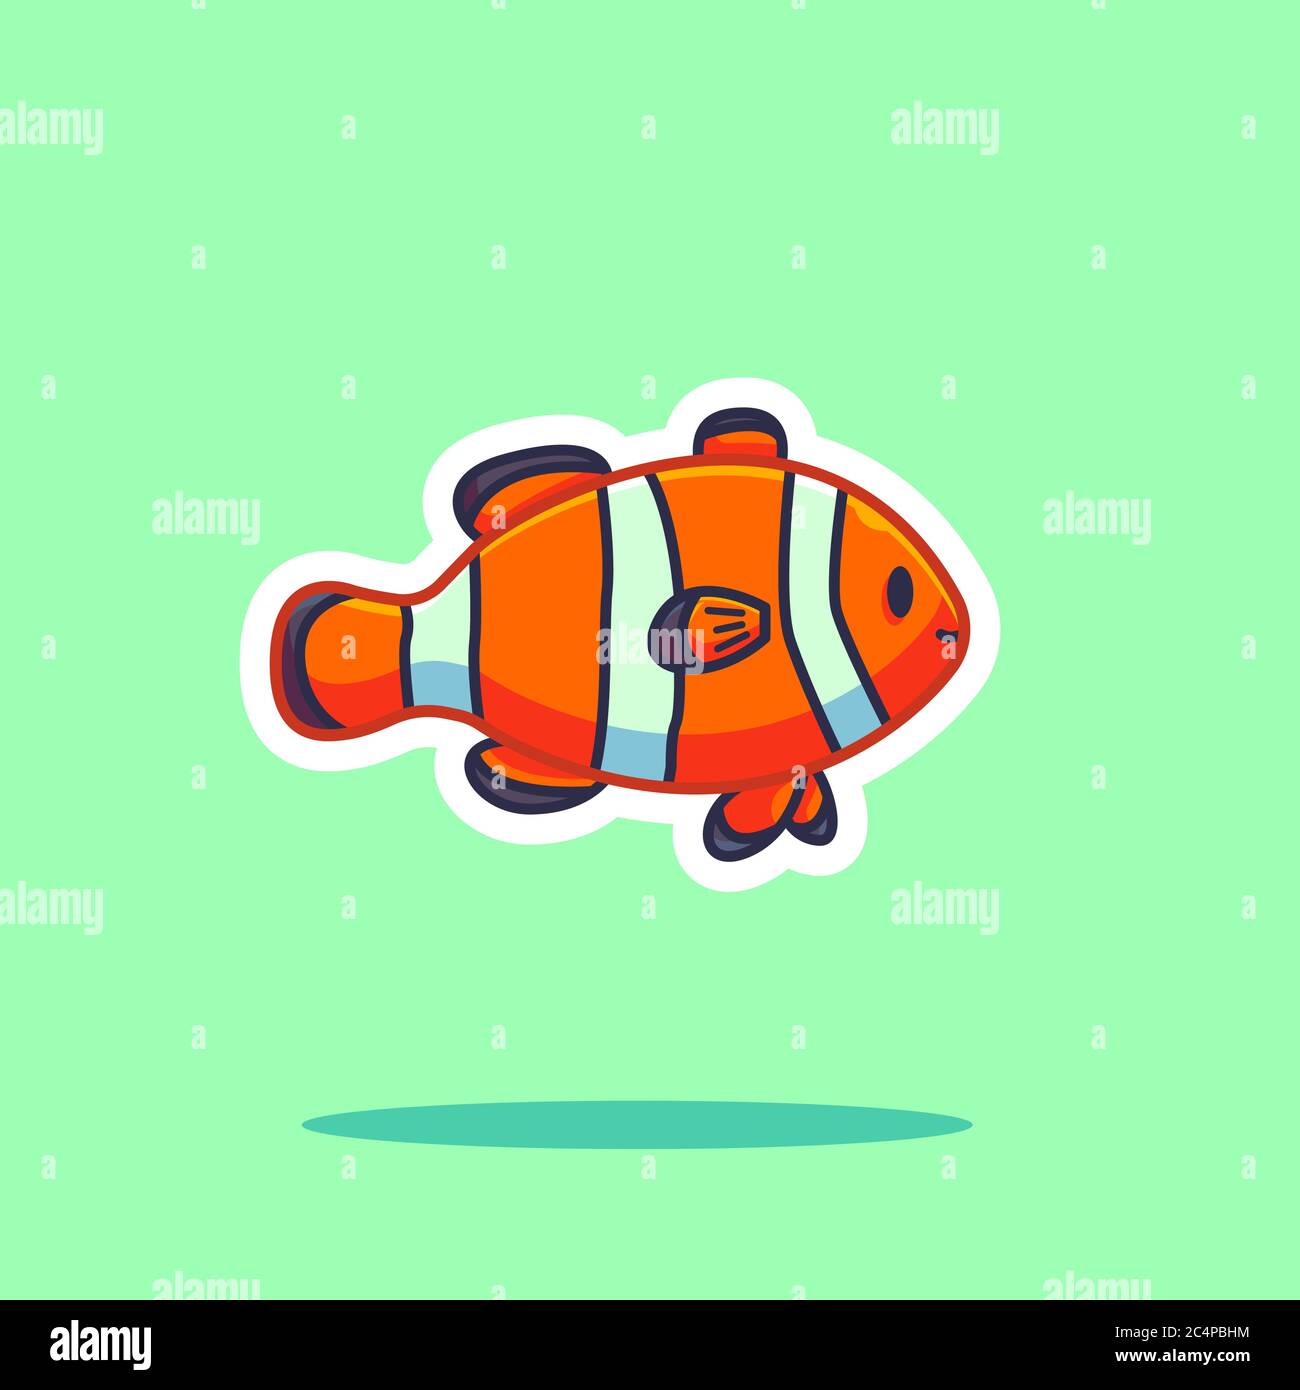 clownfish vector illustration. flat cartoon style Stock Vector